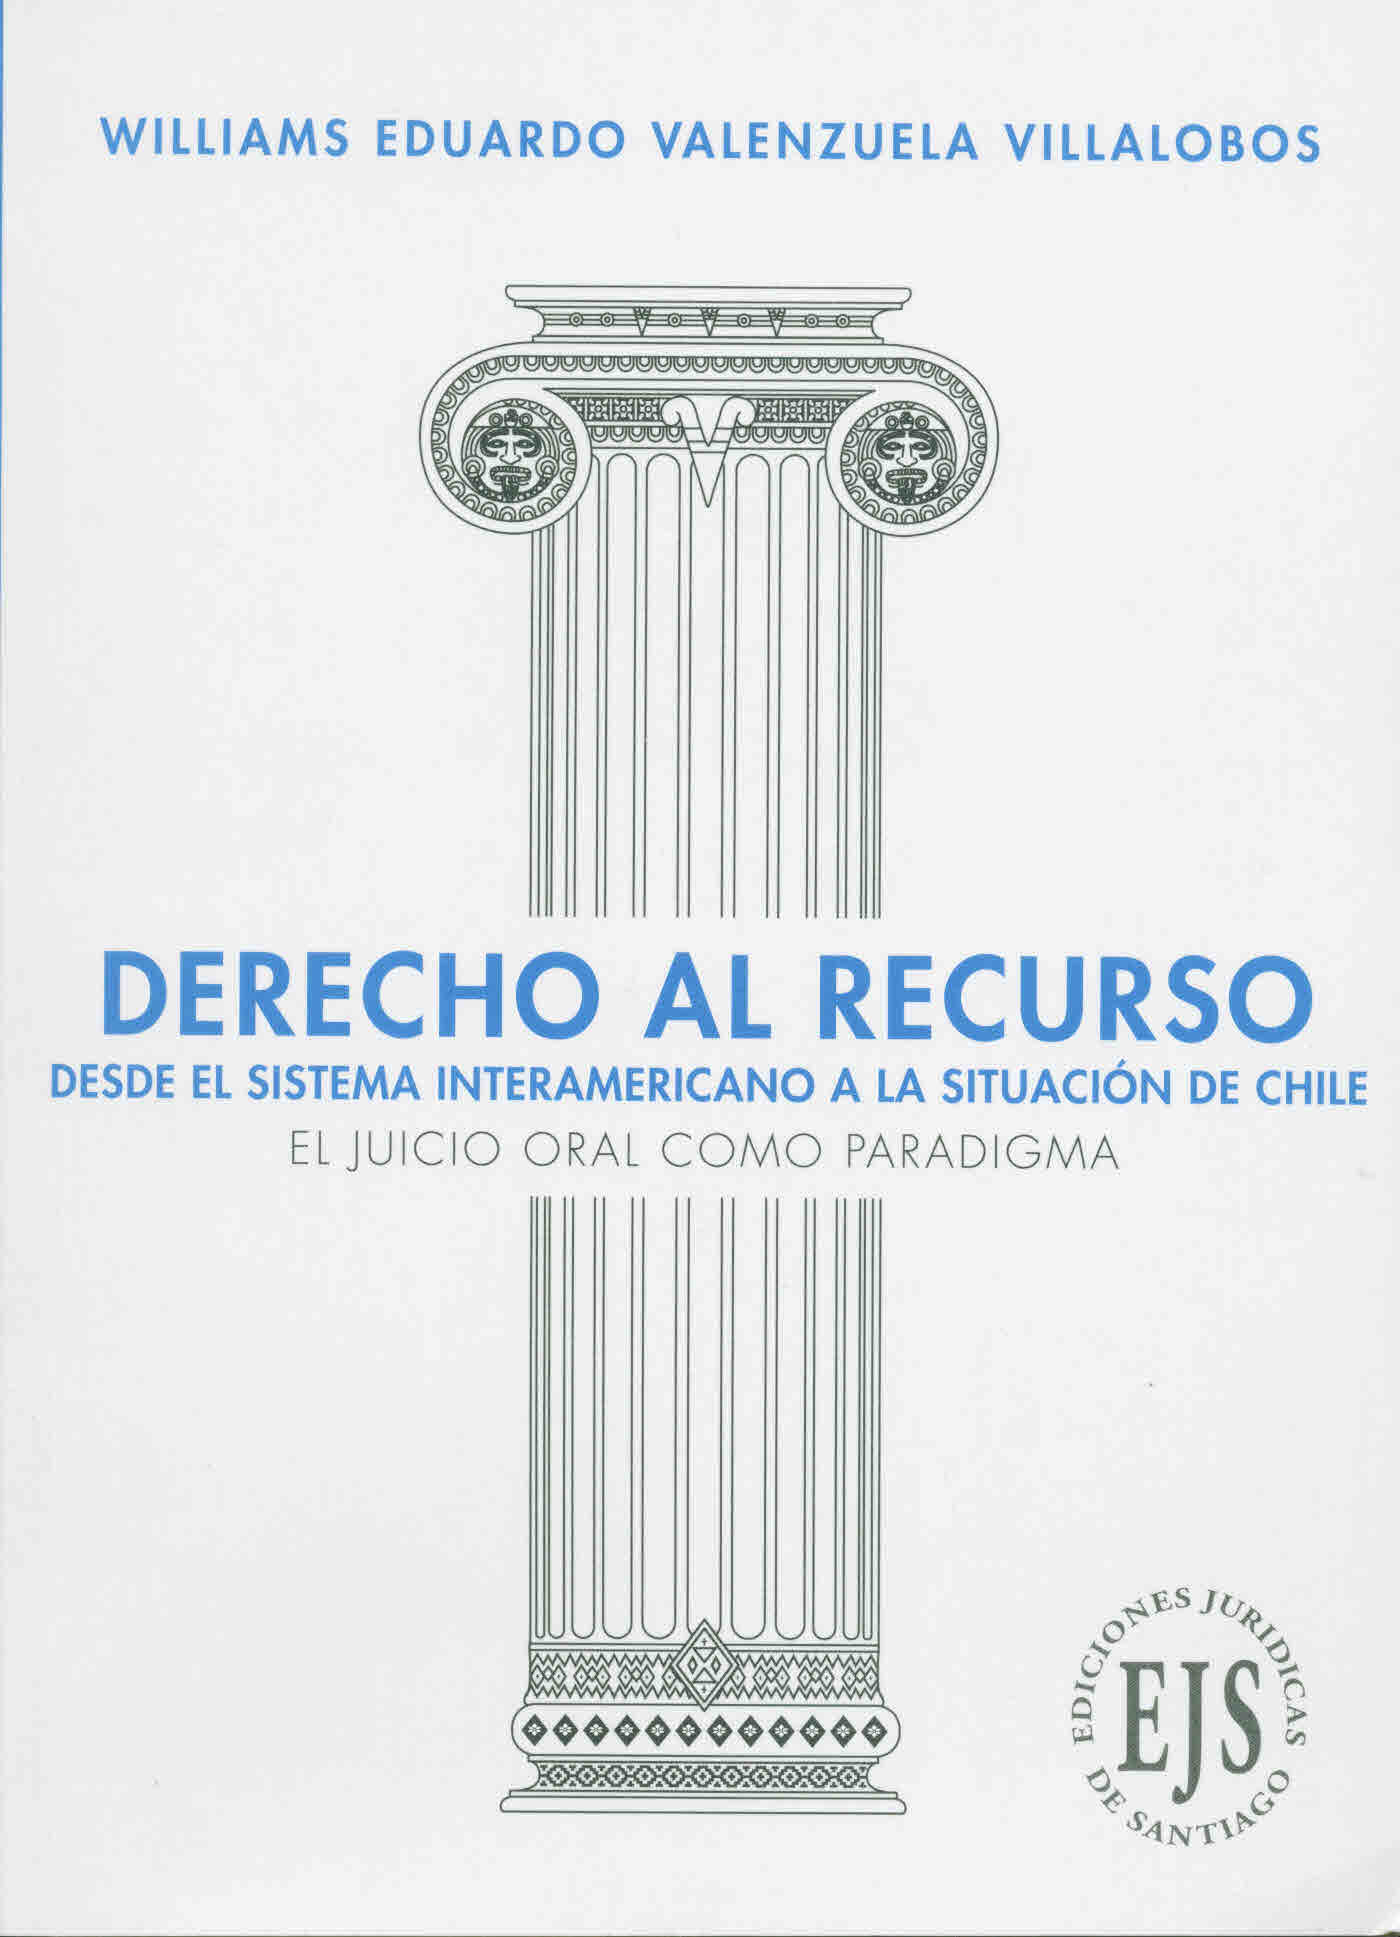 Derecho al recurso desde el sistema interamericano a la situación de Chile. El juicio oral como paradigma